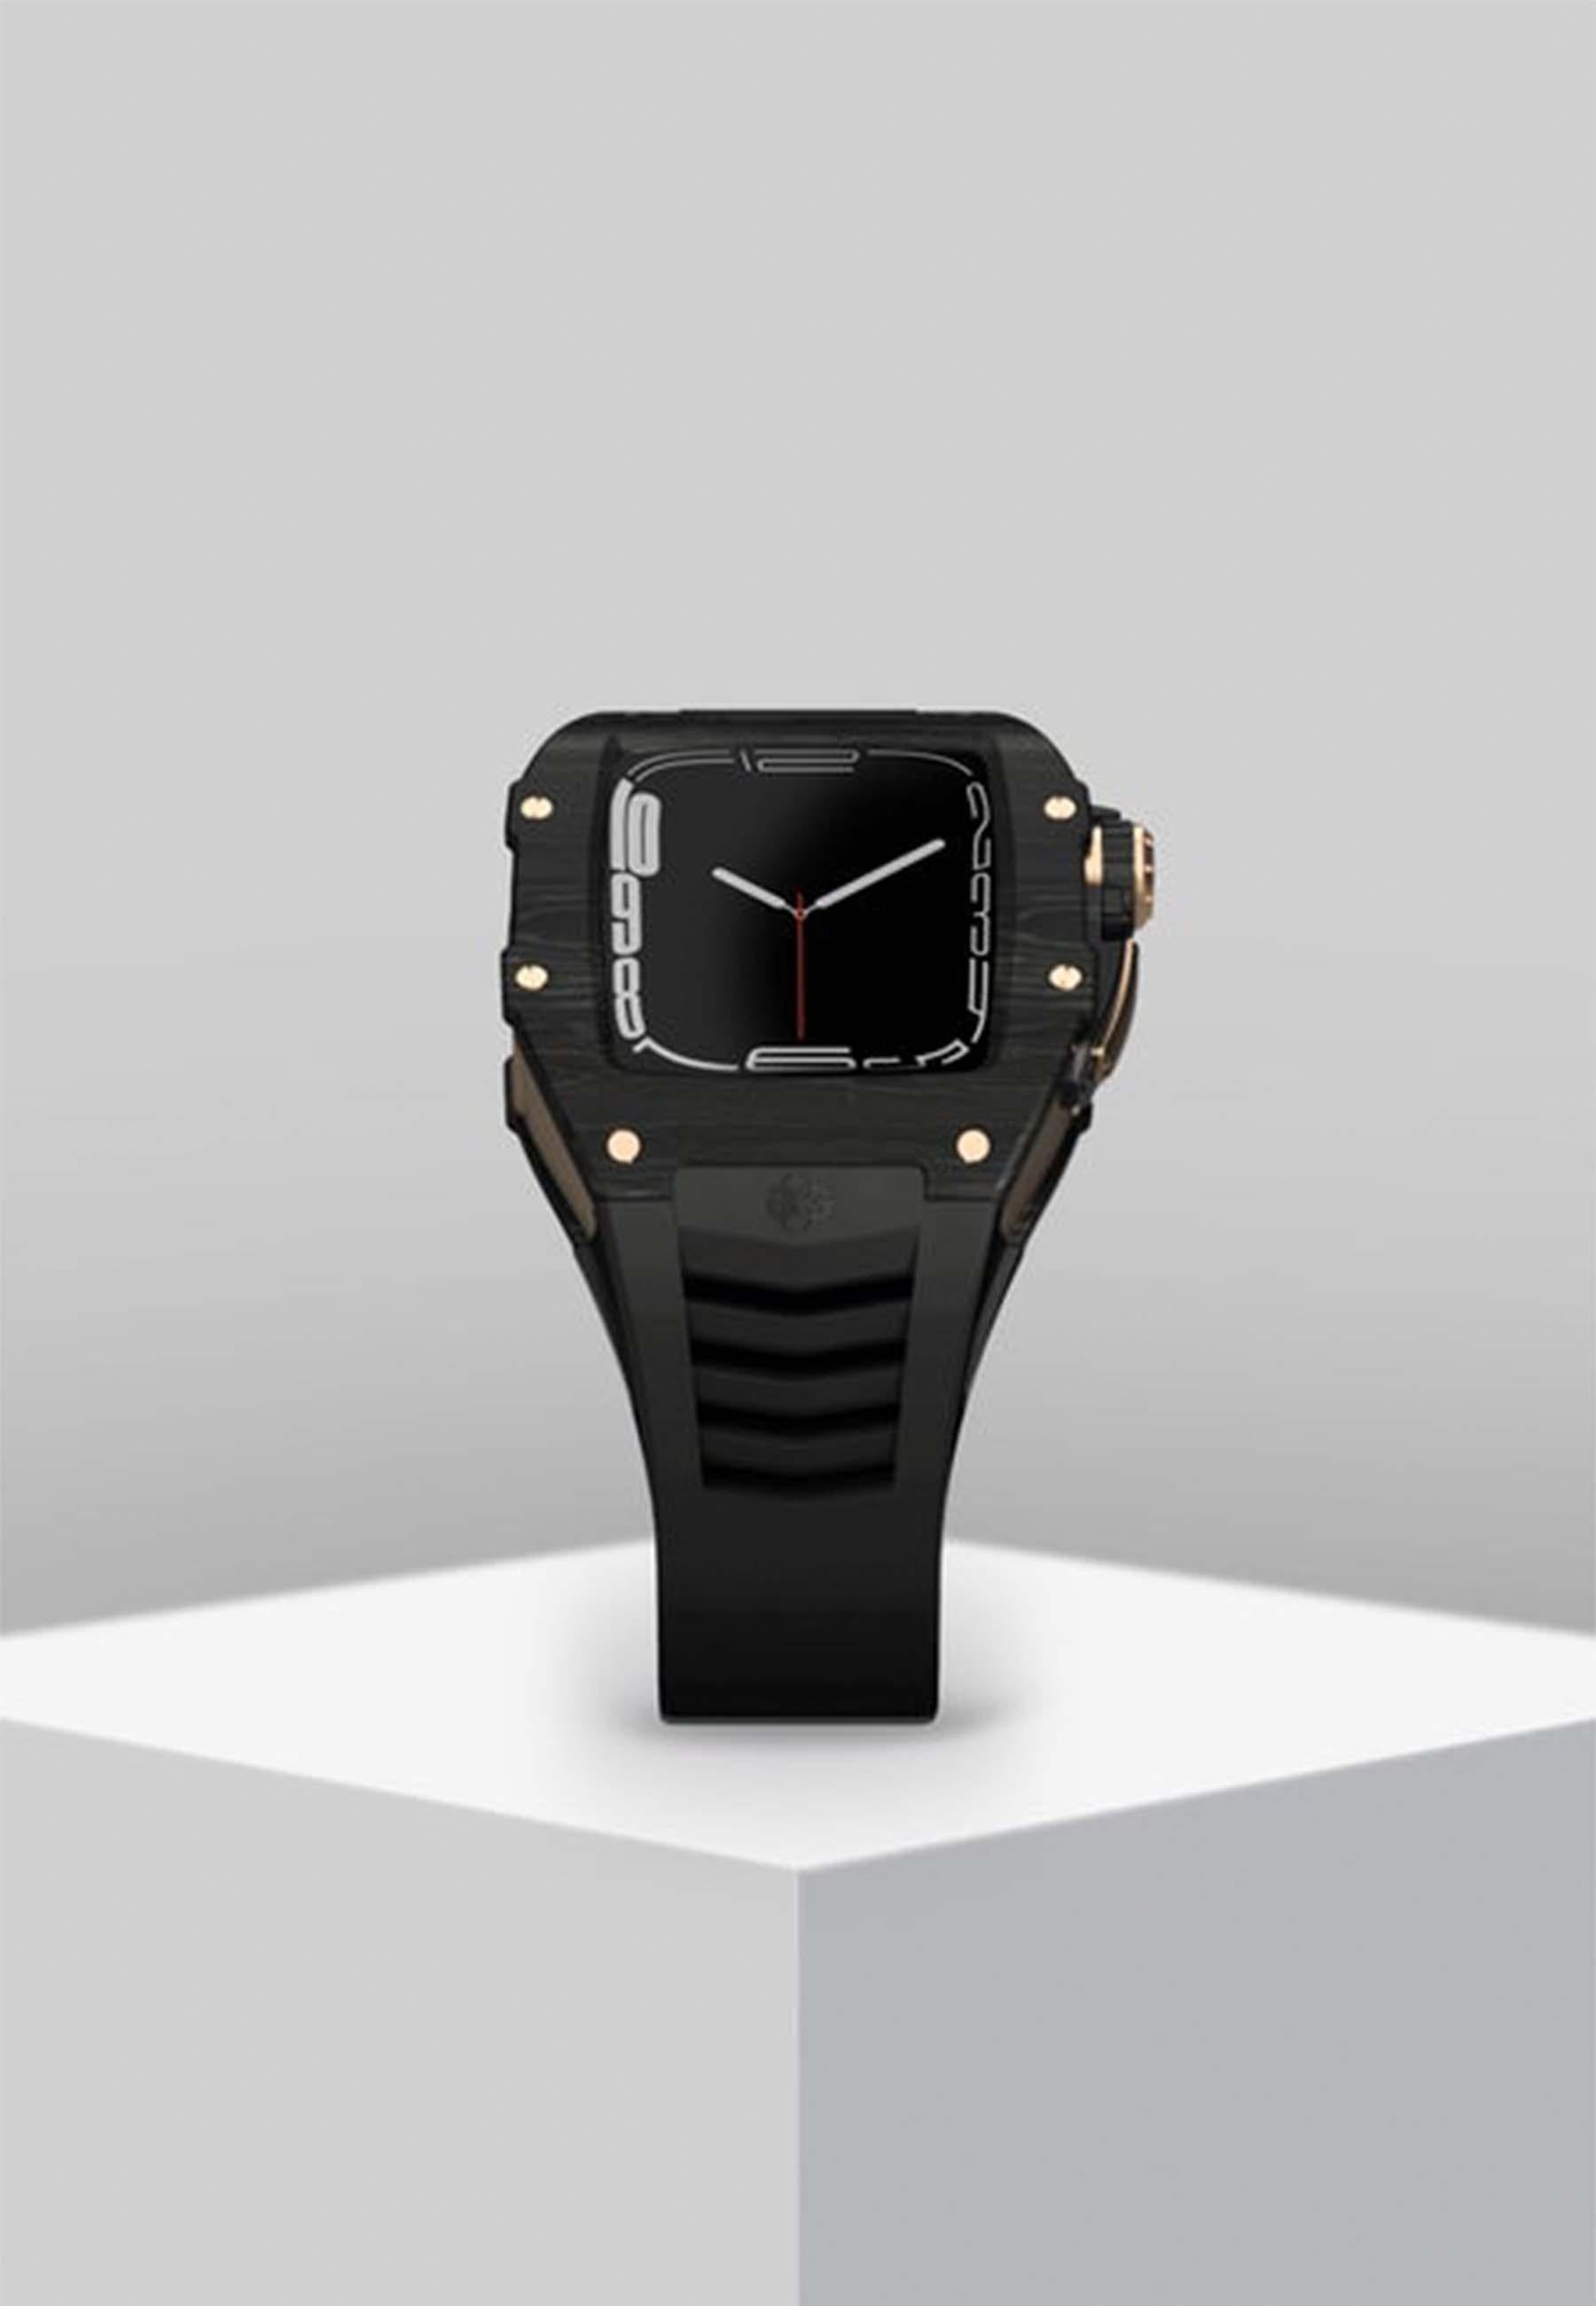 Buy Golden Concept Golden Concept Titanium Carbon Rubber Case for Apple Watch Series 7 RSC45 45mm - Onyx Black + Rose Gold Online